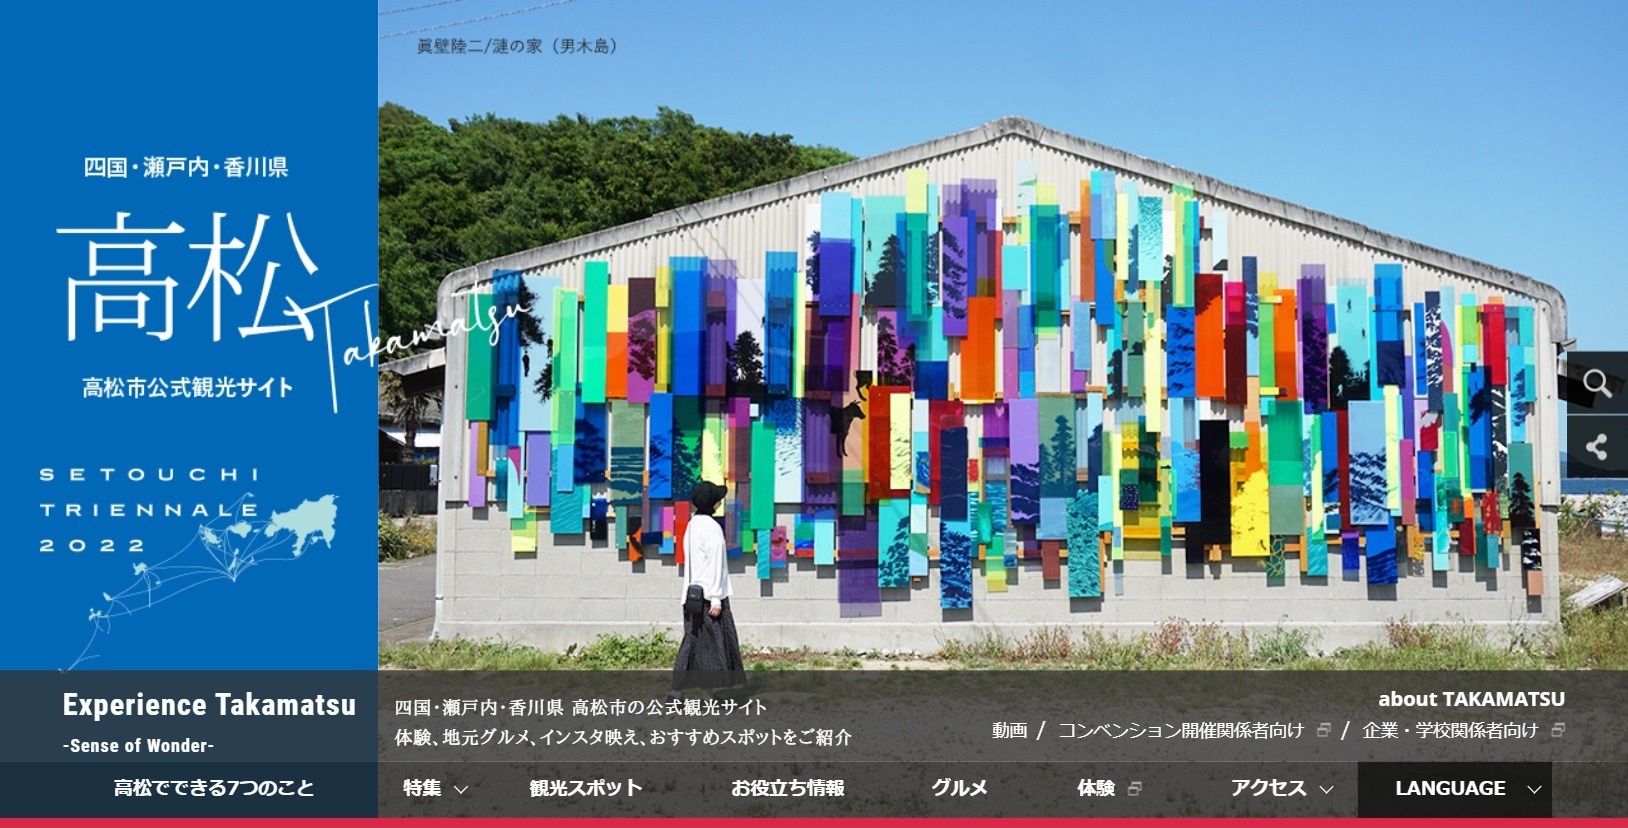 高松市公式観光サイト「エクスペリエンス高松」瀬戸芸バージョンのメインビジュアル